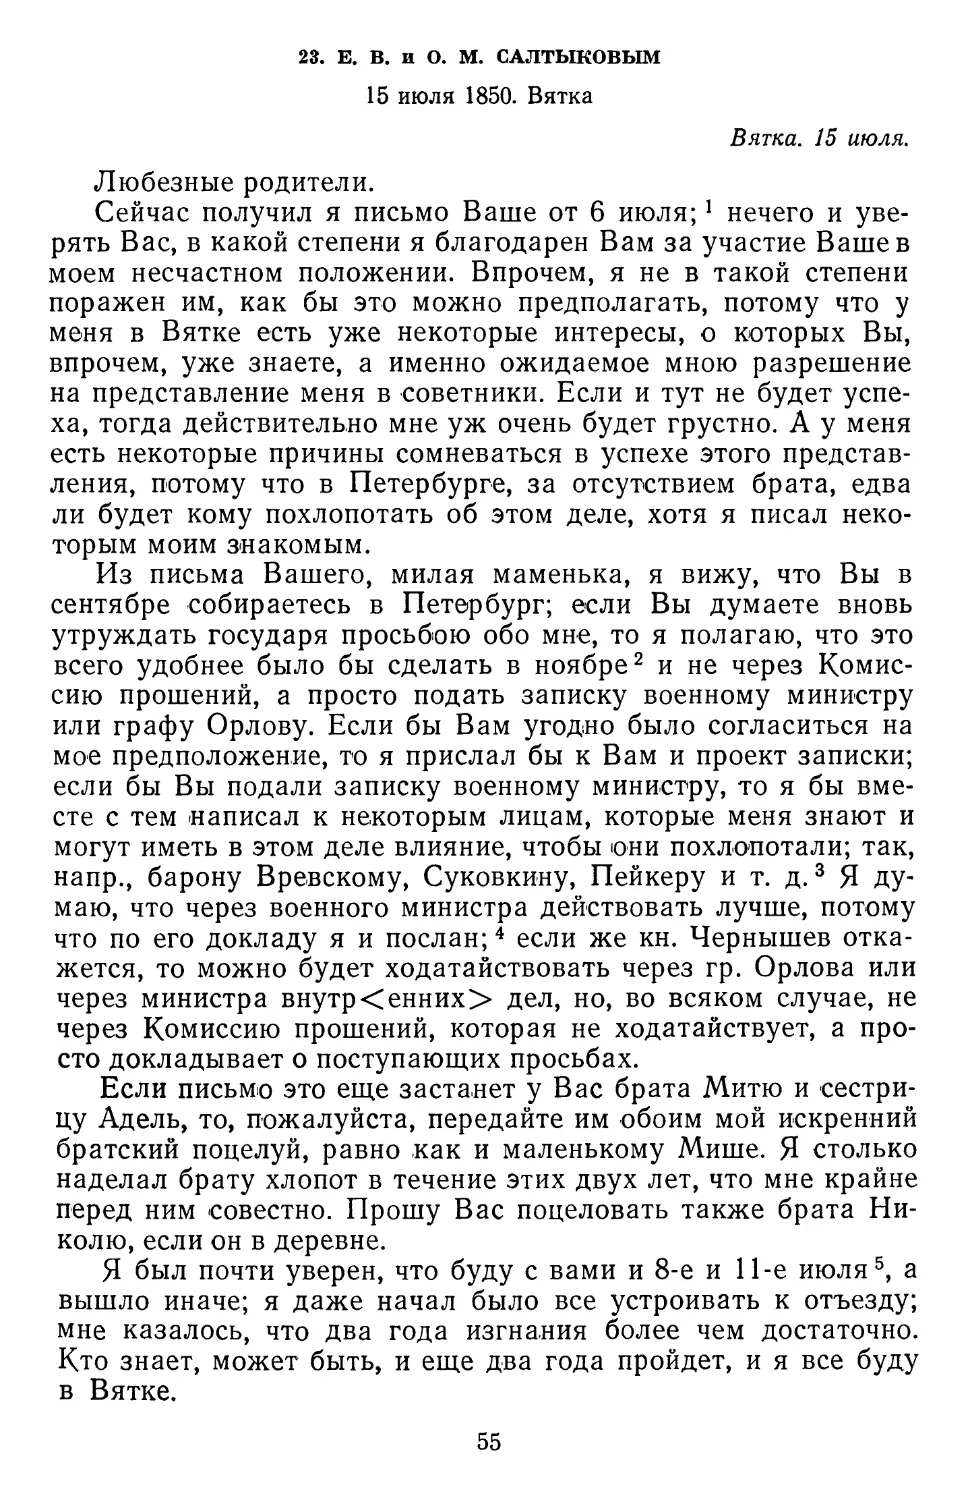 23.Е. В. и О. М. Салтыковым. 15 июля 1850. Вятка